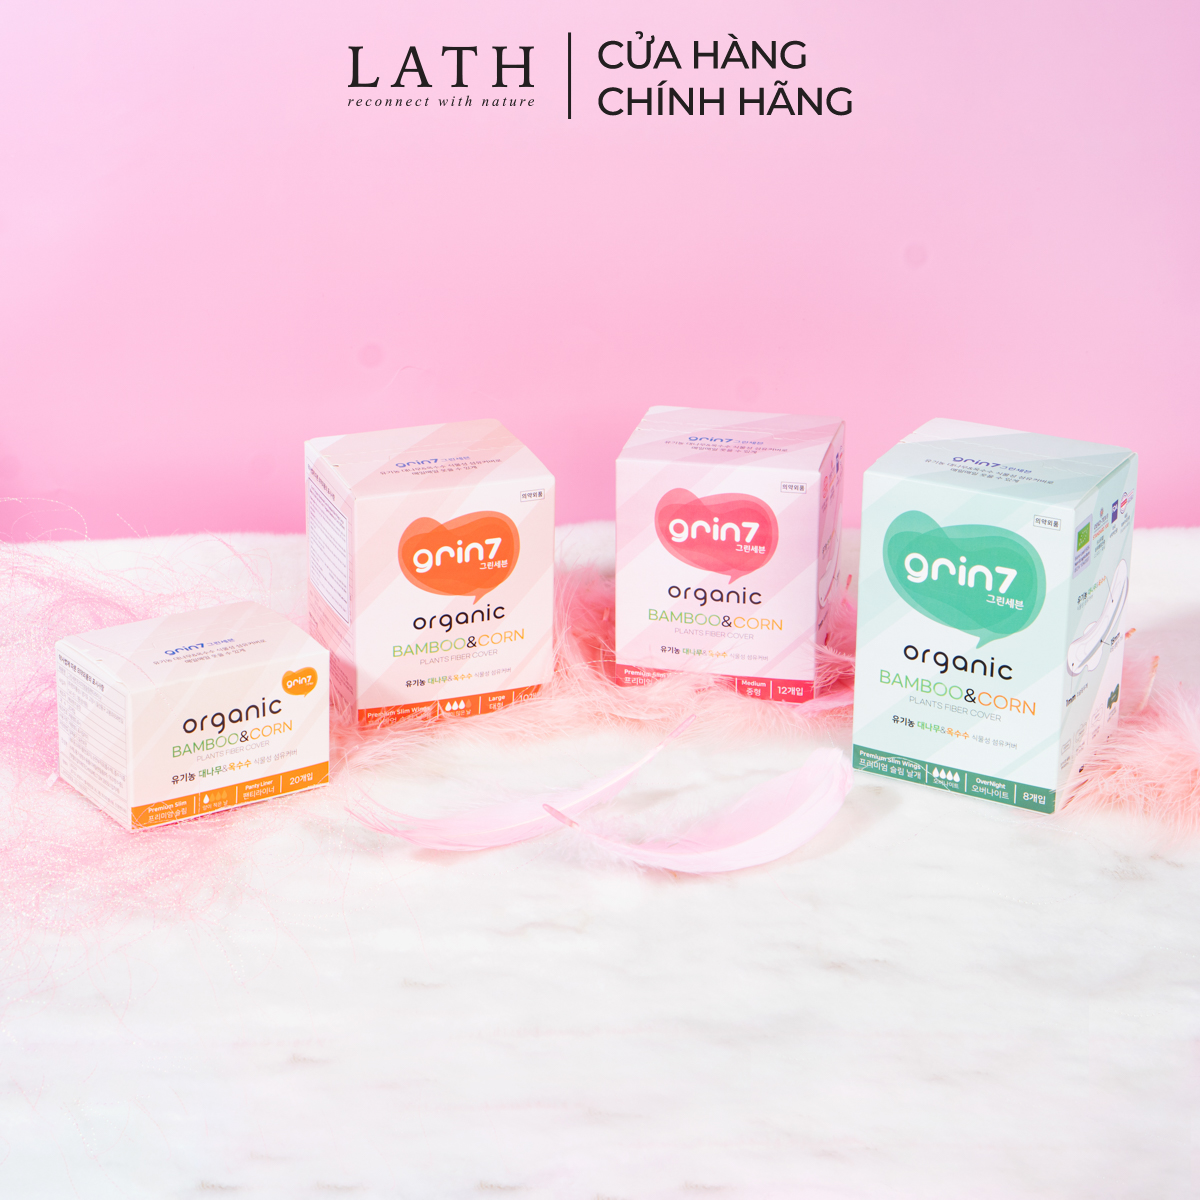 Combo 4 hộp 4 loại Băng vệ sinh Hàn Quốc Grin7 Organic, băng vệ sinh hữu cơ – Lath beauty DATE 09/2023